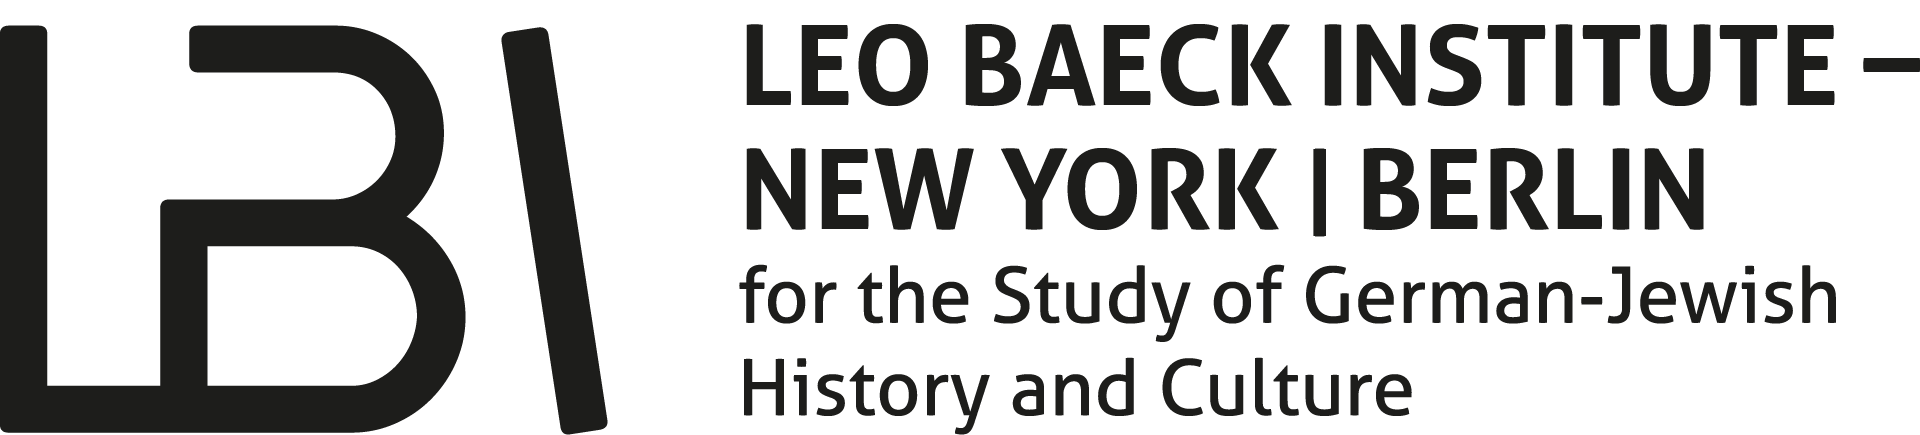 Leo-Baeck-1920px-landscape-logo.png